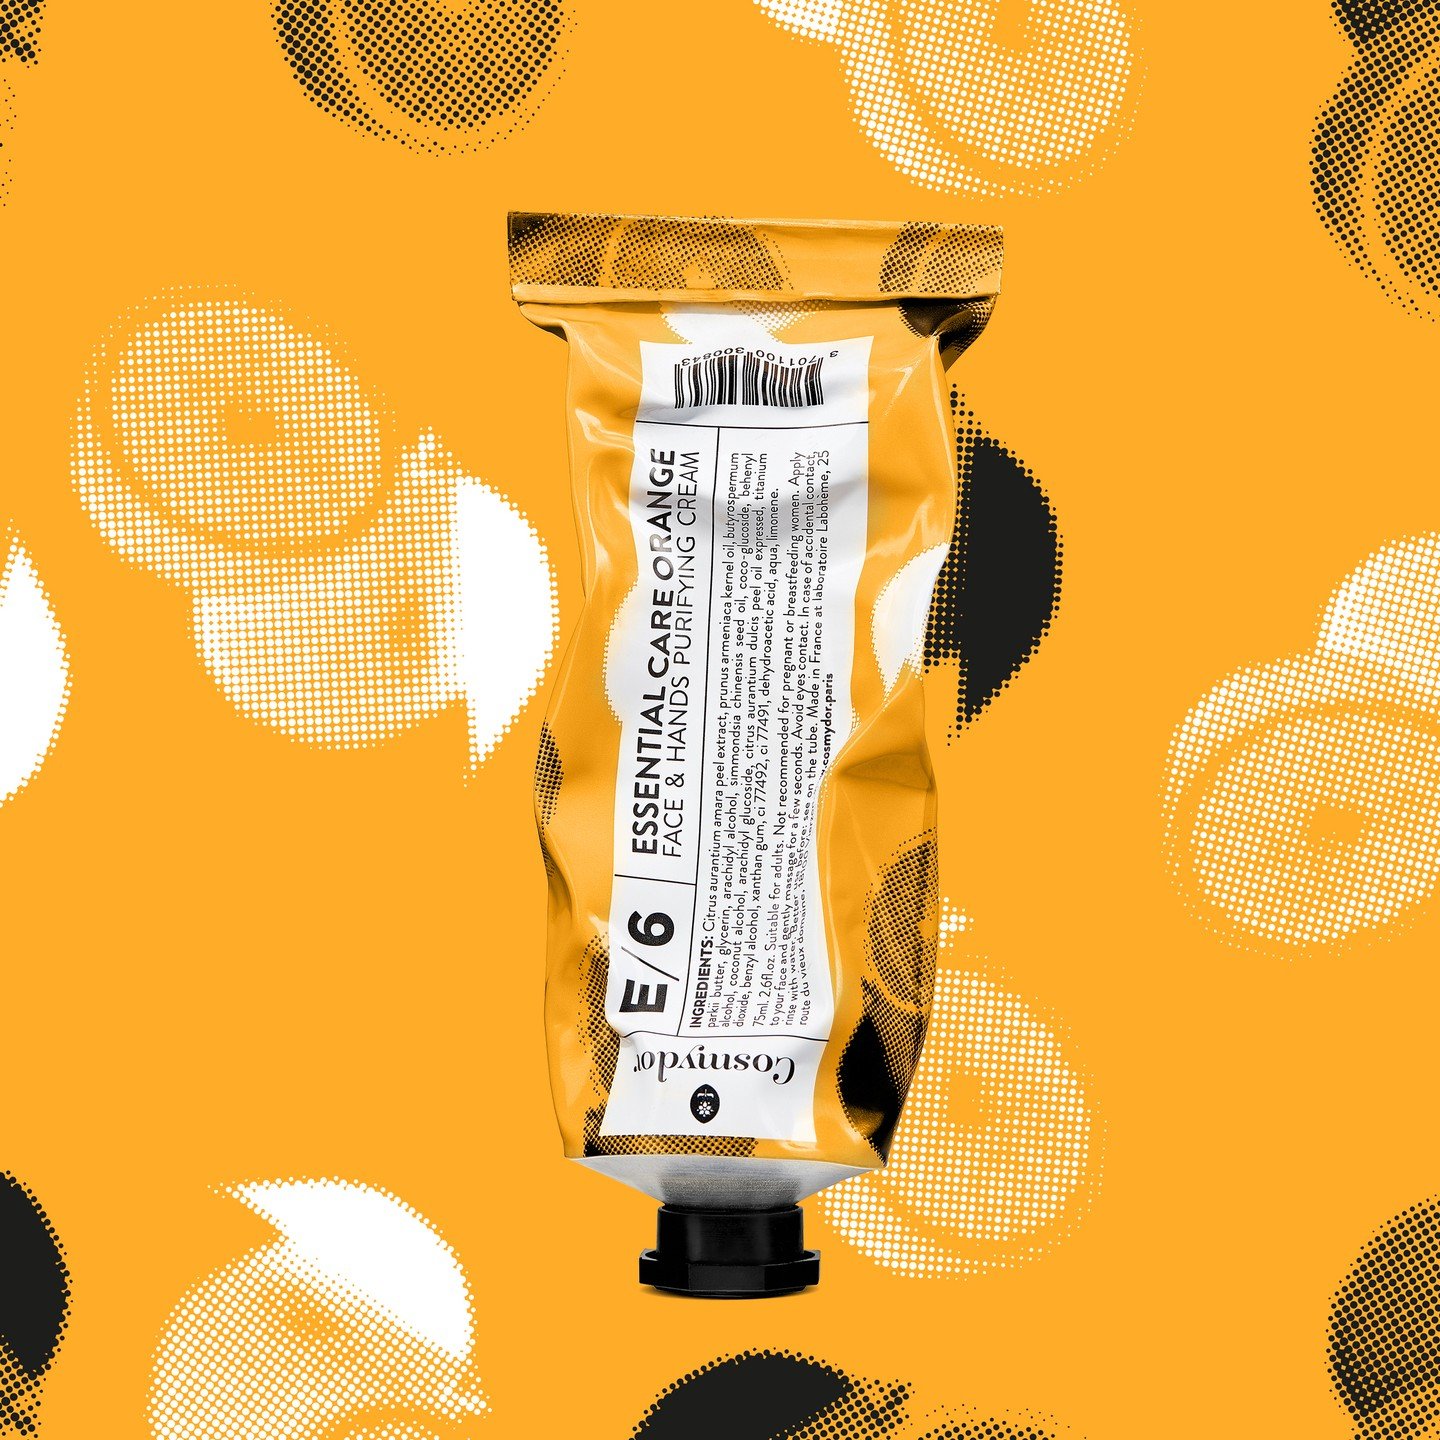 E/6 Essential Care Orange - Ultra feuchtigkeitsspendende und reinigende Hand- und Gesichtscreme

Der kräftige Duft von (Bio-)Orangen und eine reichhaltige Textur für eine unglaubliche Hautreinigungswirkung.Die hohe Konzentration an Aprikosenkernöl, Sheabutter und Jojobaöl